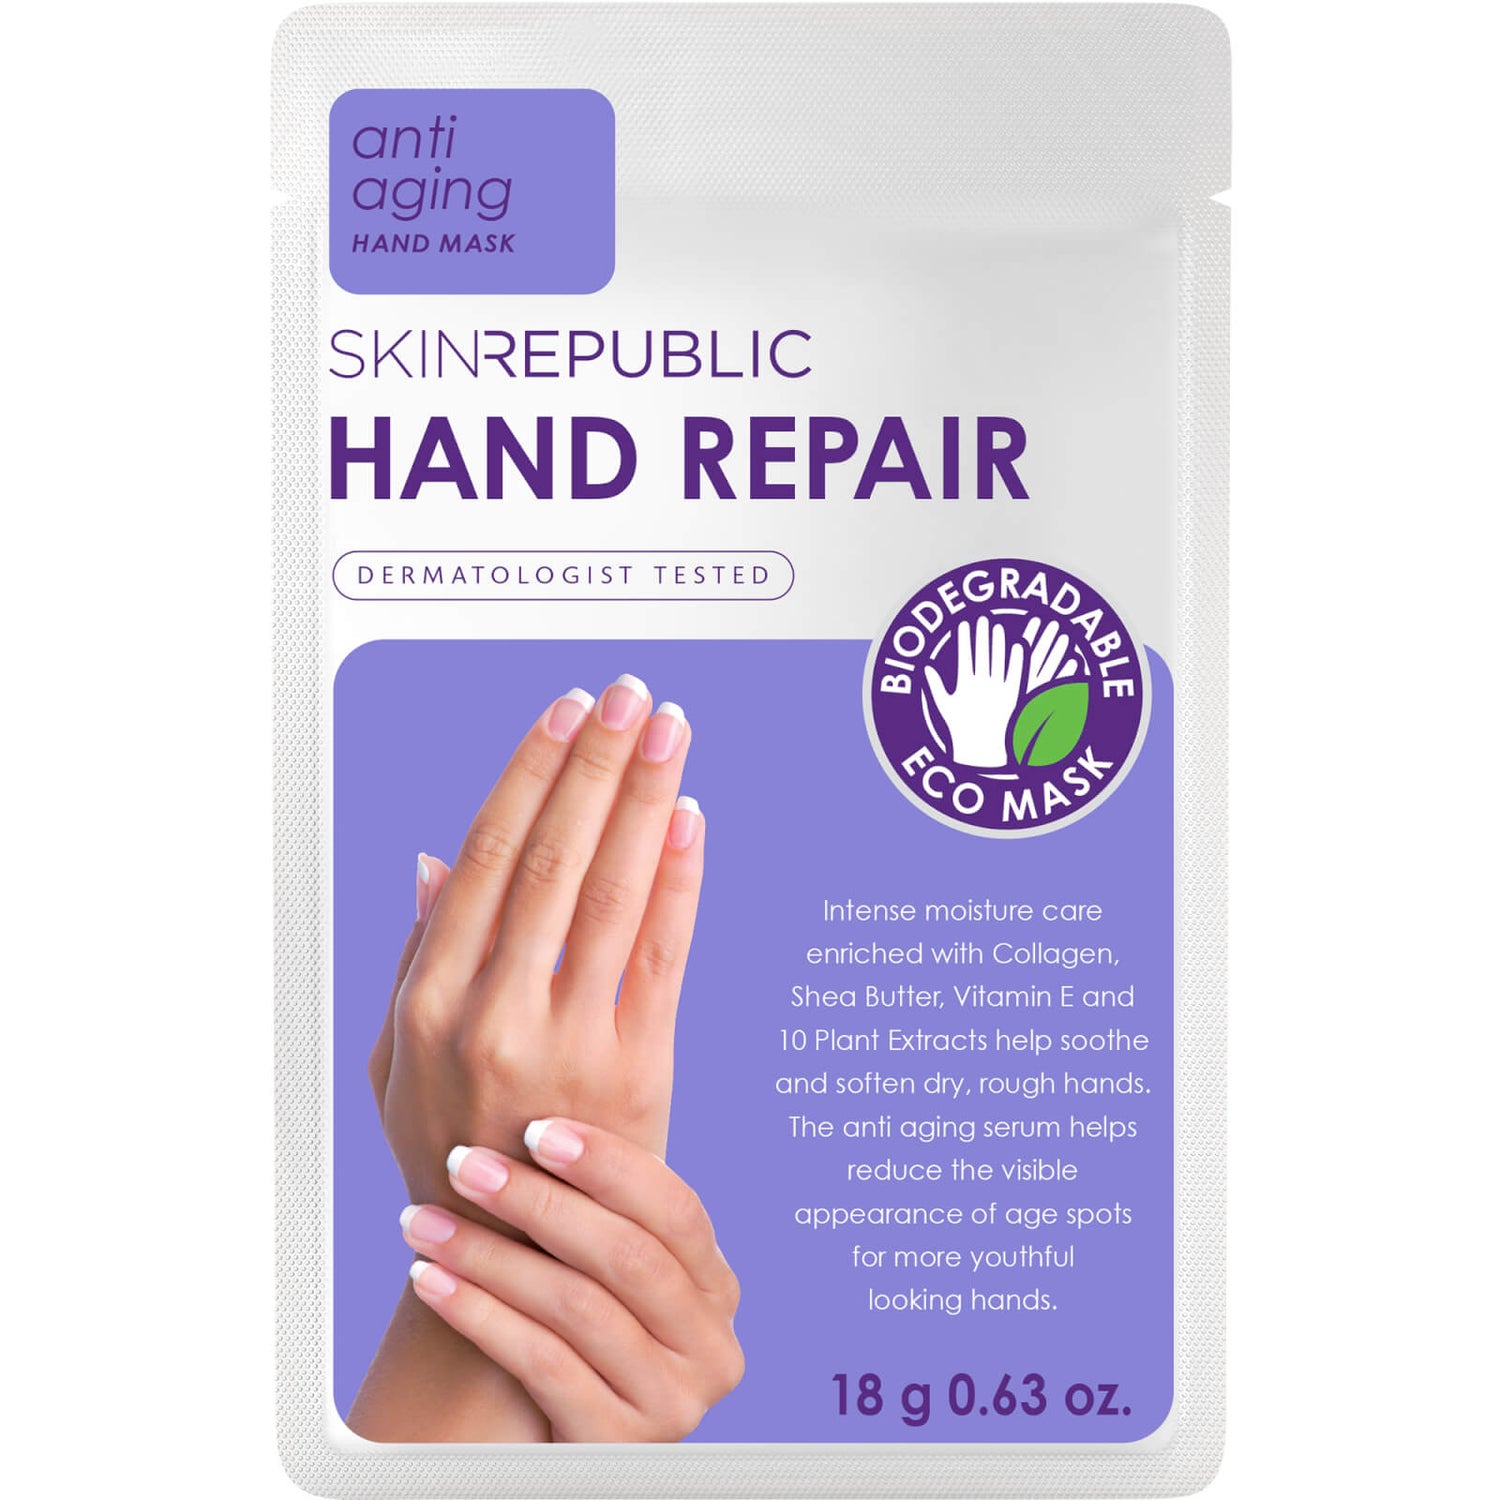 Skin Republic Foot Repair - 18g